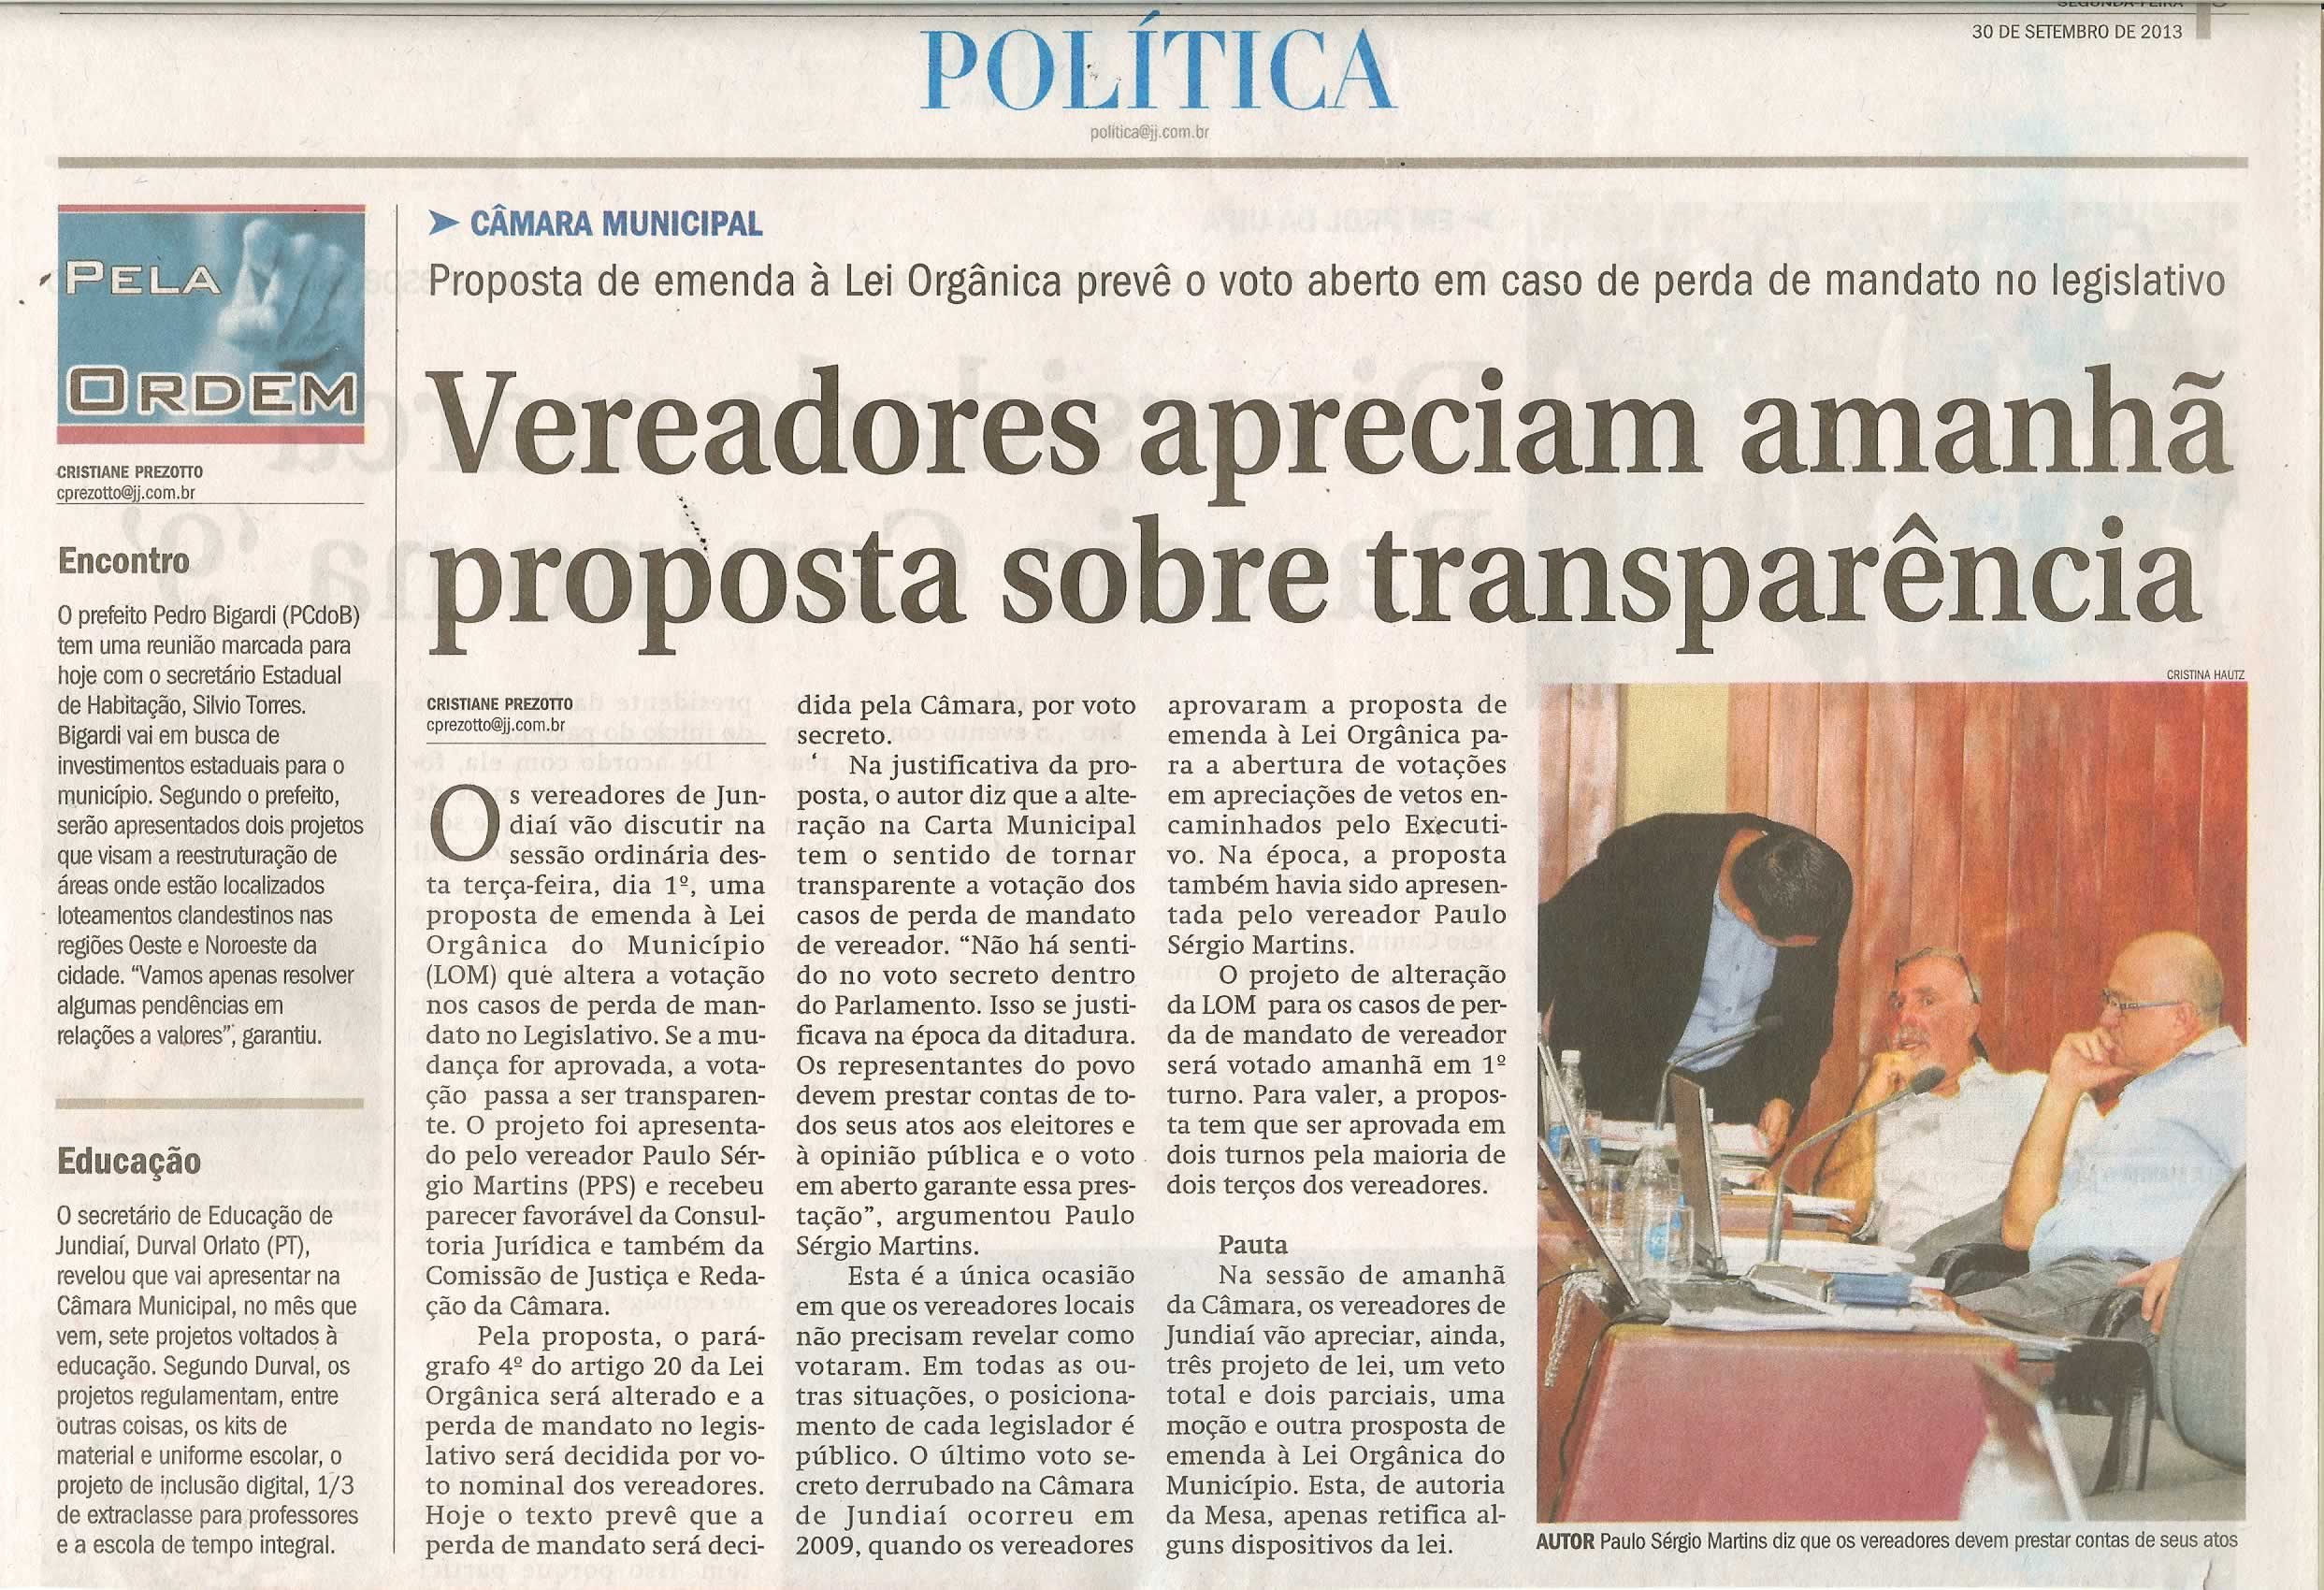 JJ - 30/09/13 - pagina 3 - política - Vereadores apreciam amanhã proposta sobre transparência - 